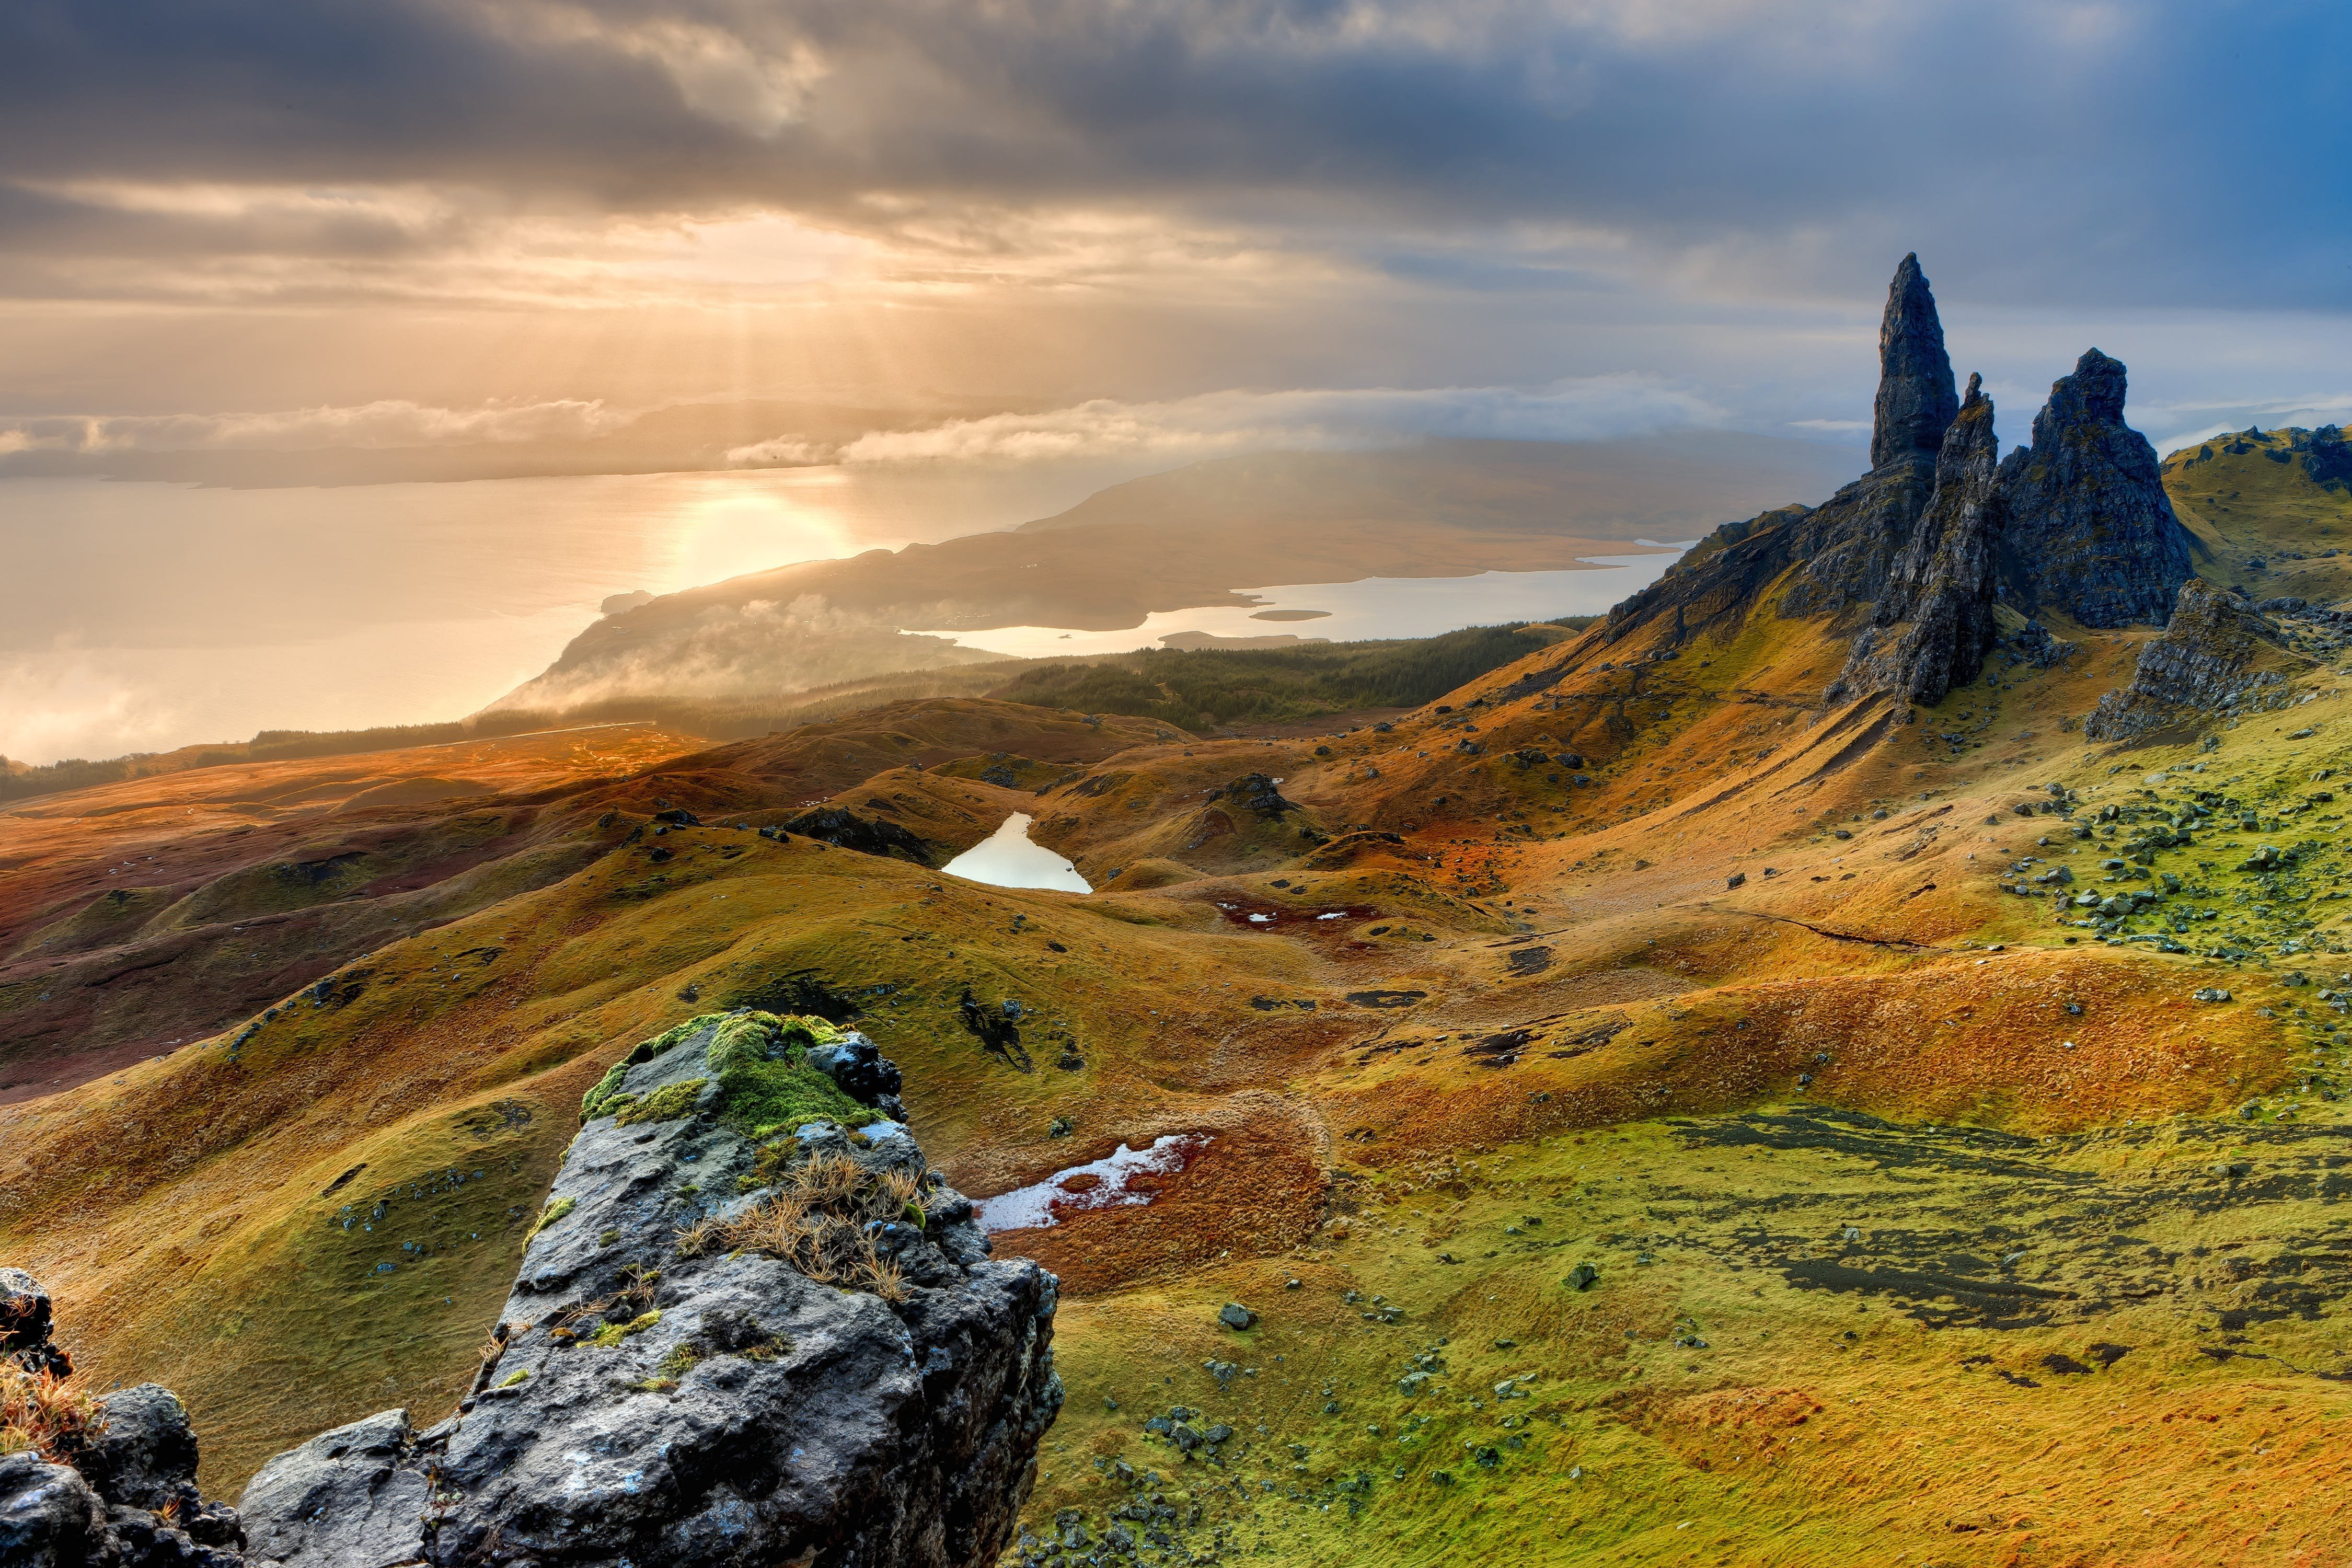 The nature is also. Остров Скай, Шотландия (Isle of Skye). Шотландия Highlands. Долина фей остров Скай Шотландия. Хайленд Шотландия Высокогорье.